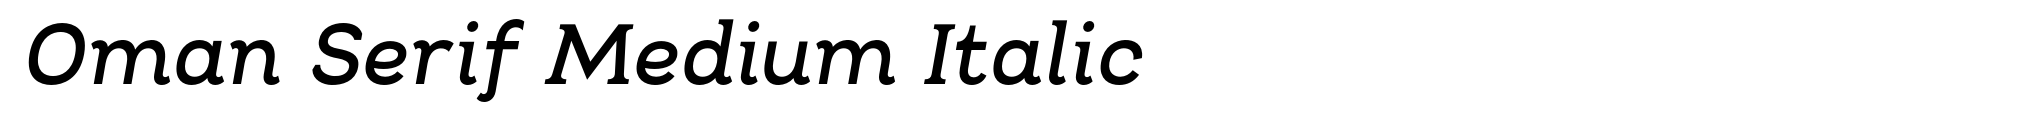 Oman Serif Medium Italic image